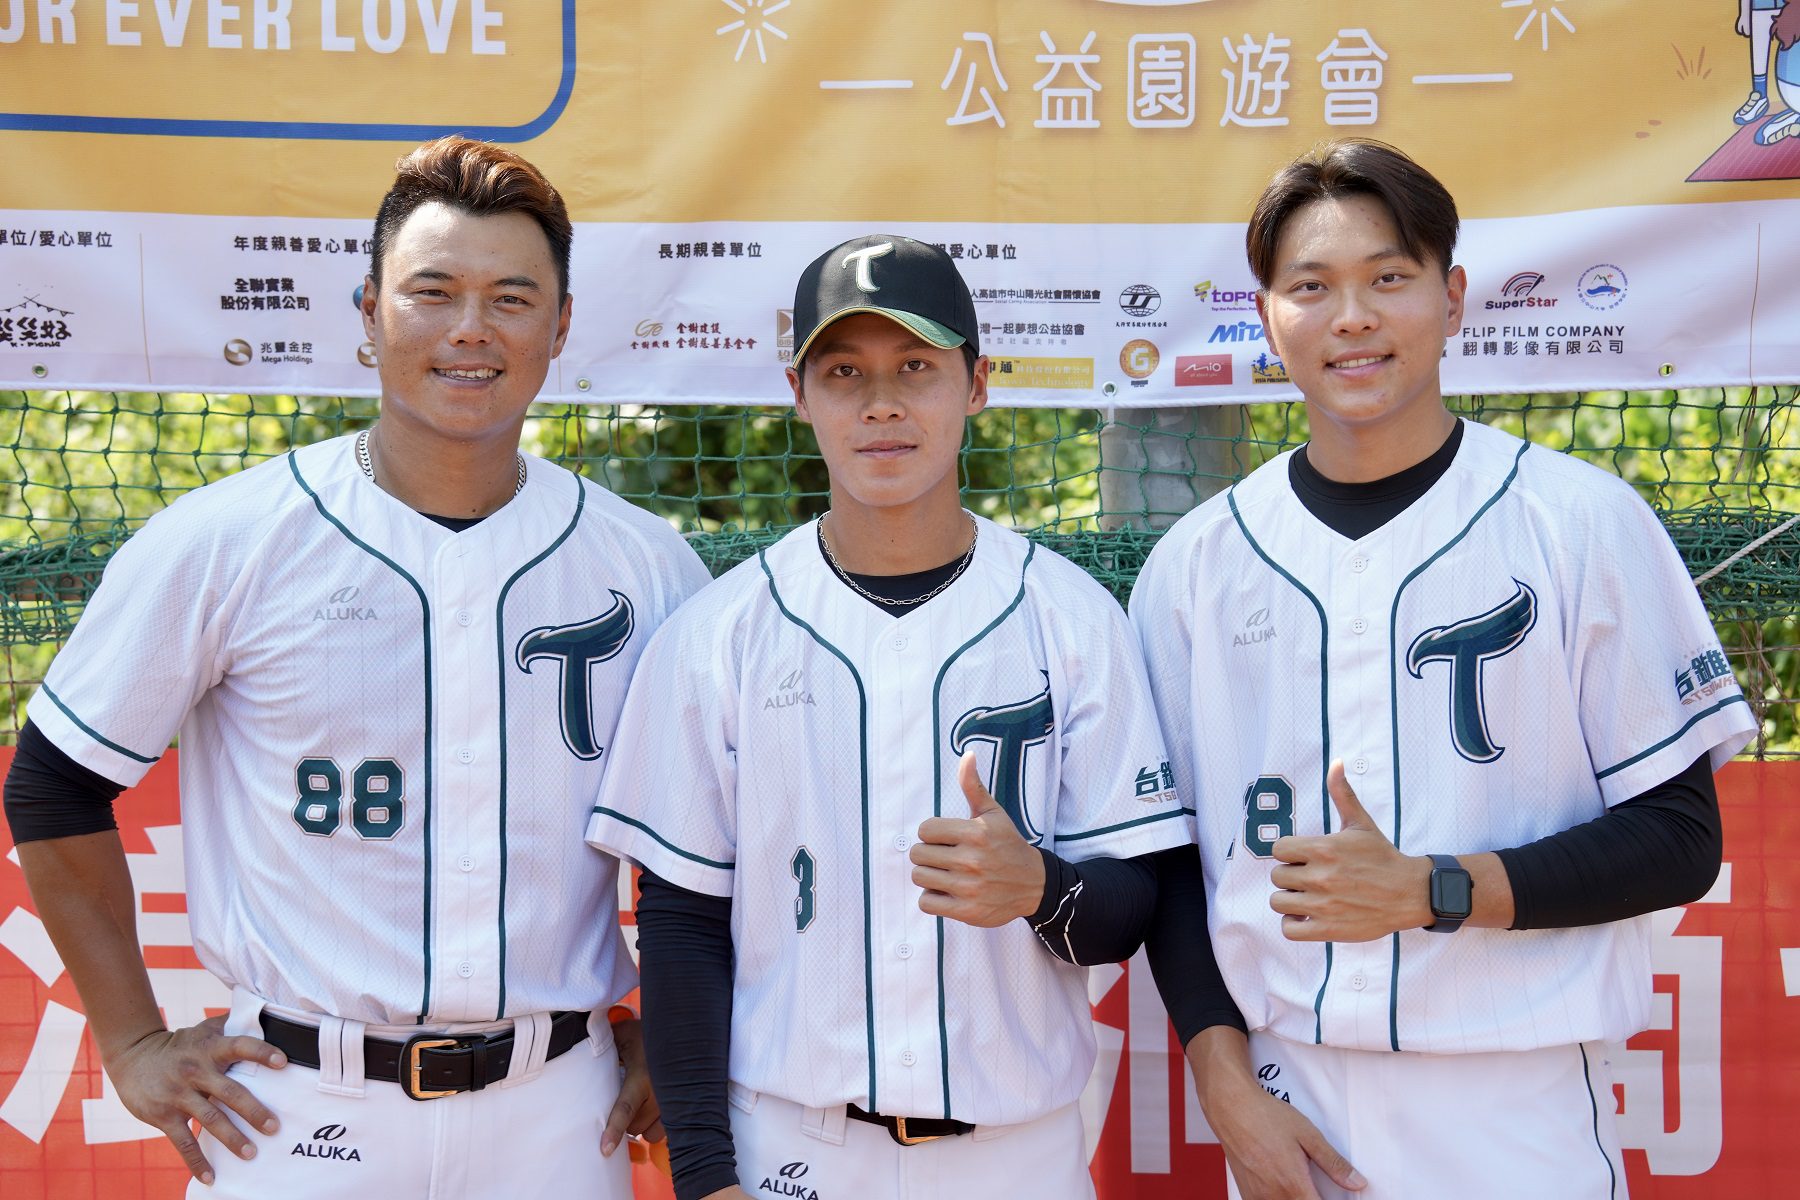 「天使盃」身障棒球賽暨公益園遊會 台鋼球星到場力挺 - 早安台灣新聞 | Morning Taiwan News